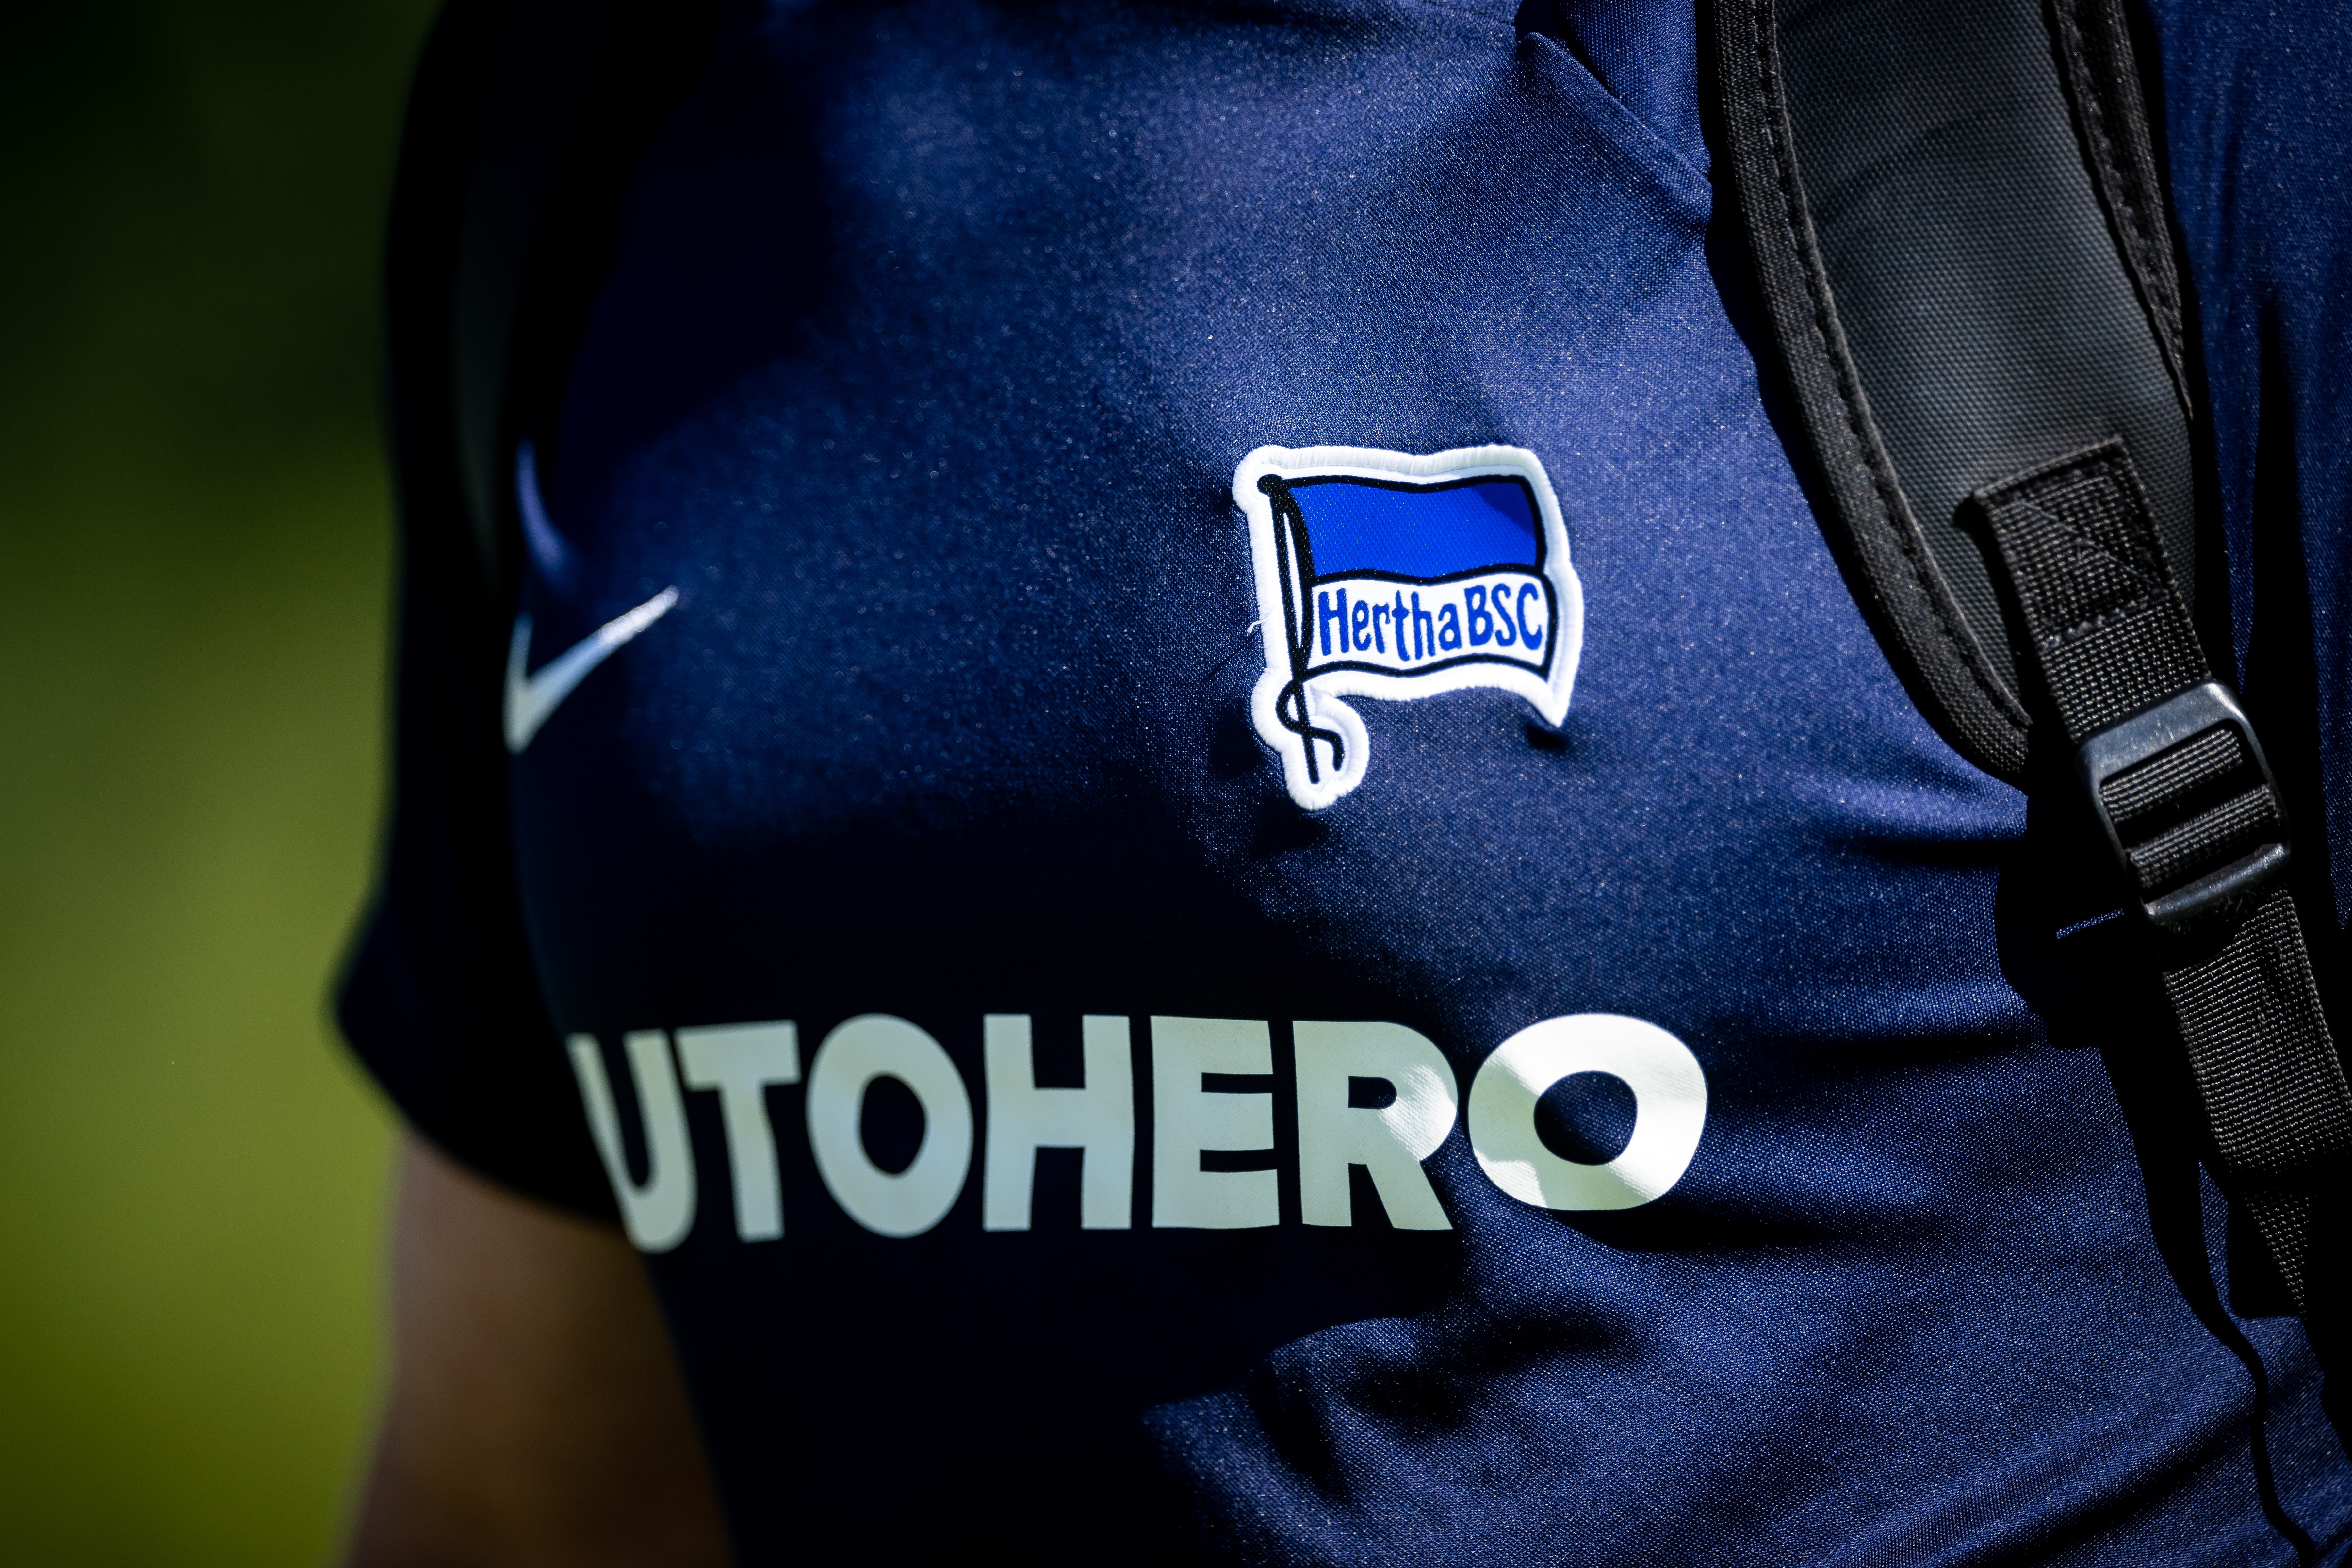 Unsere Hertha-Fahne auf dem dunkelblauen Trainingsshirt.